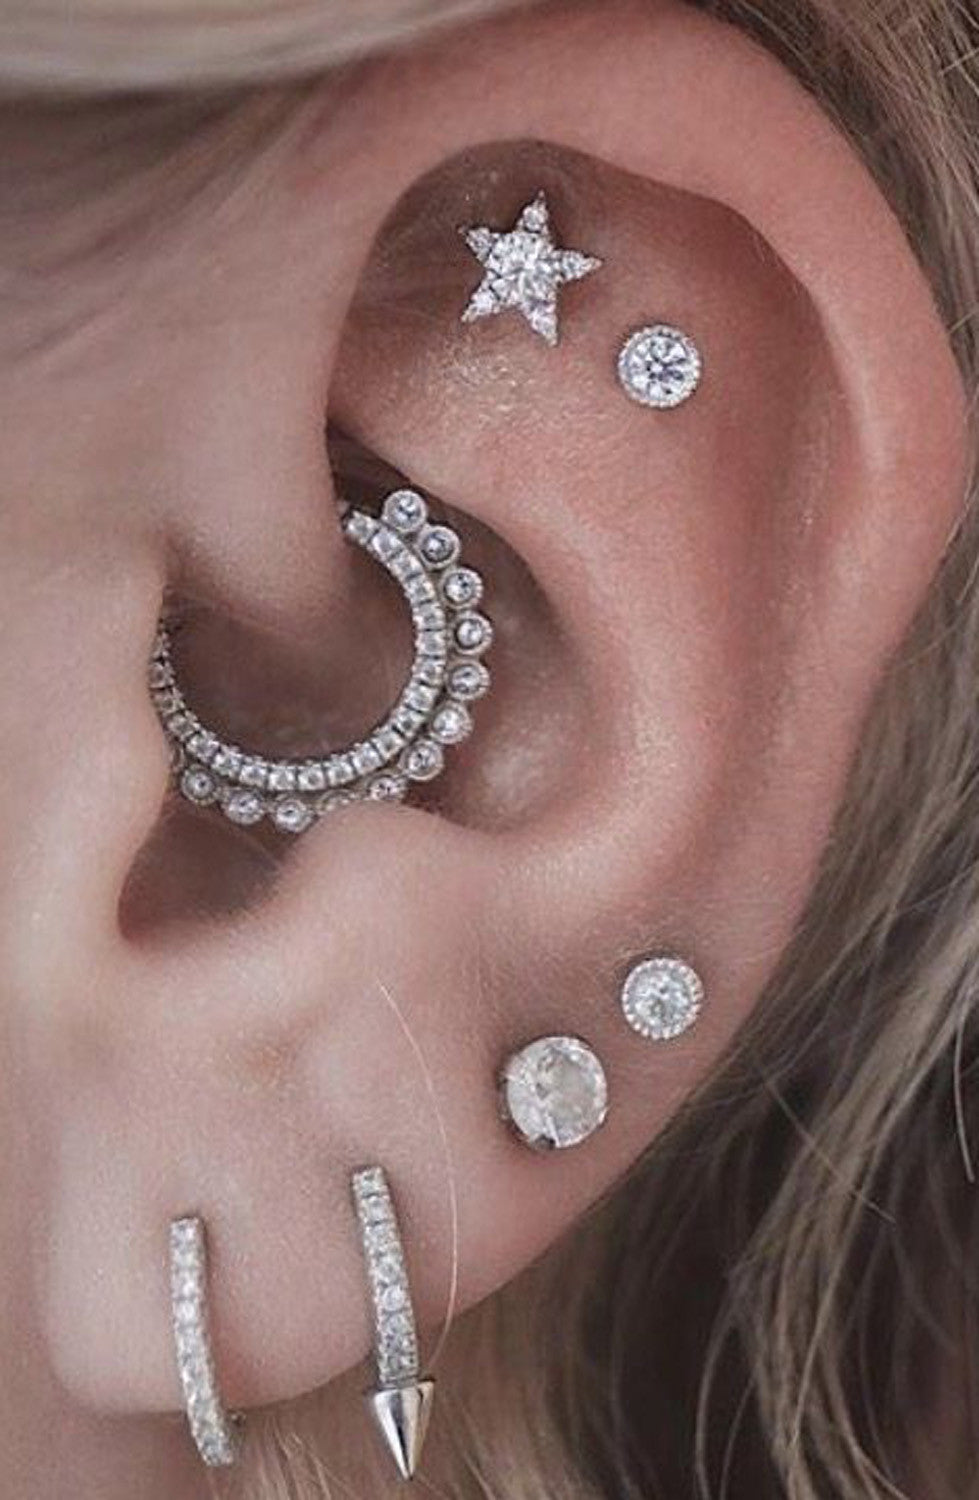 Cute Ear Piercing Ideas - Rook Piercing Jewelry, Cartilage Earrings, Helix Earrings at MyBodiArt.com